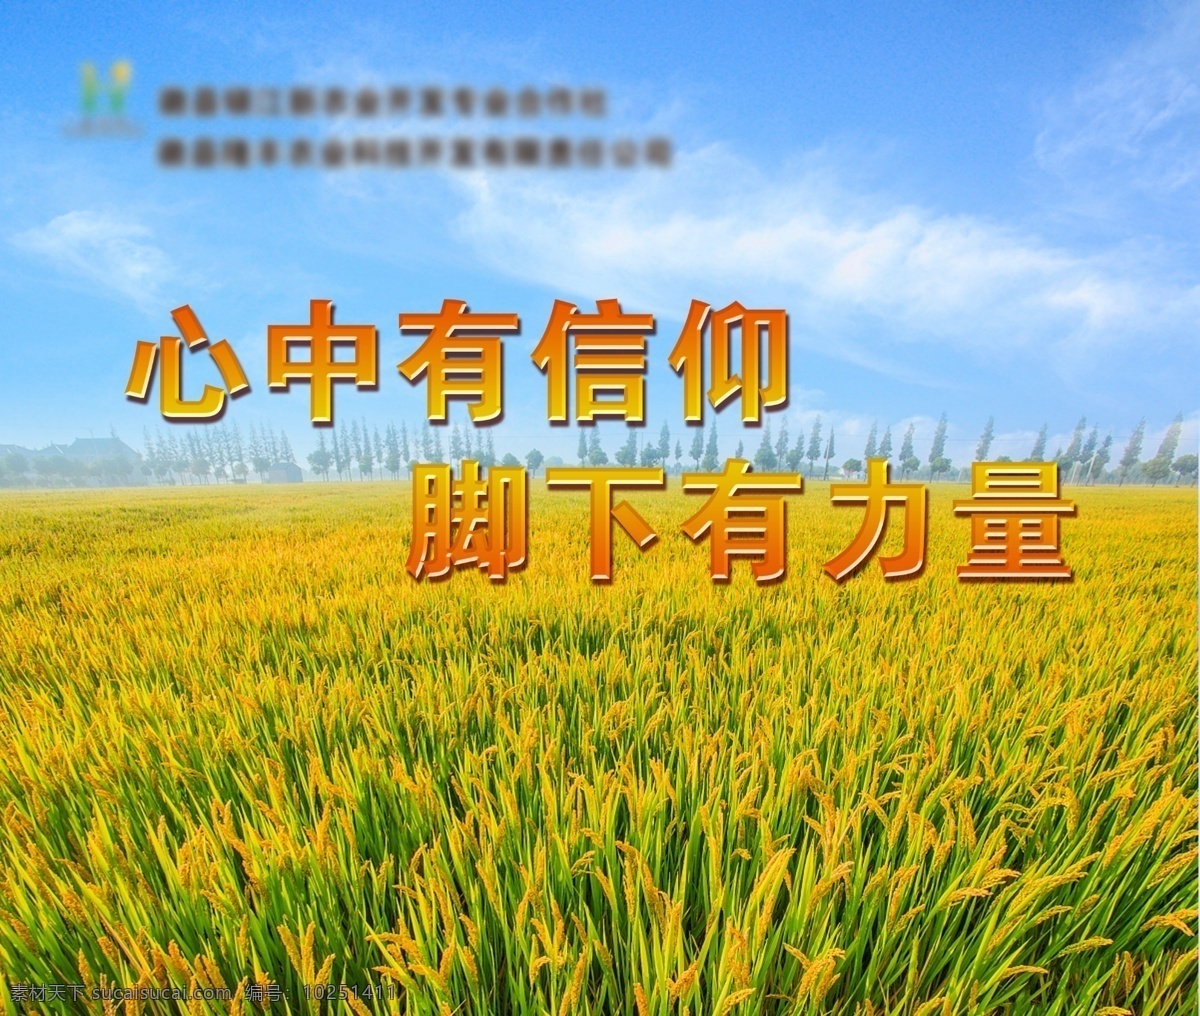 麦田 稻子 信仰 力量 企业展板 农业企业 企业文化 展板 谷图片 背景 大稻 展板模板